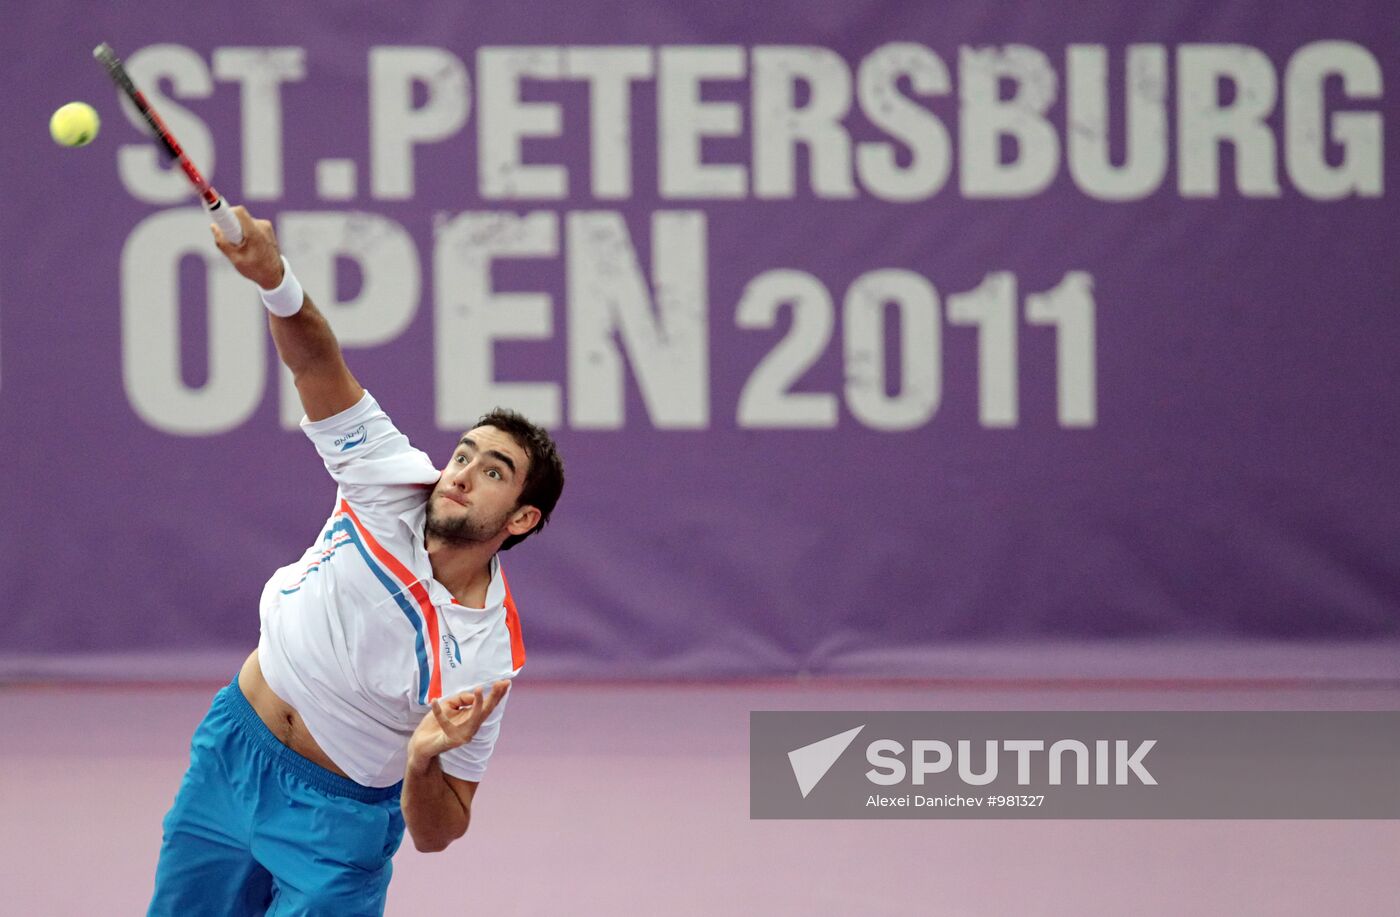 Tennis. "St. Petersburg Open 2011" Semi-finals